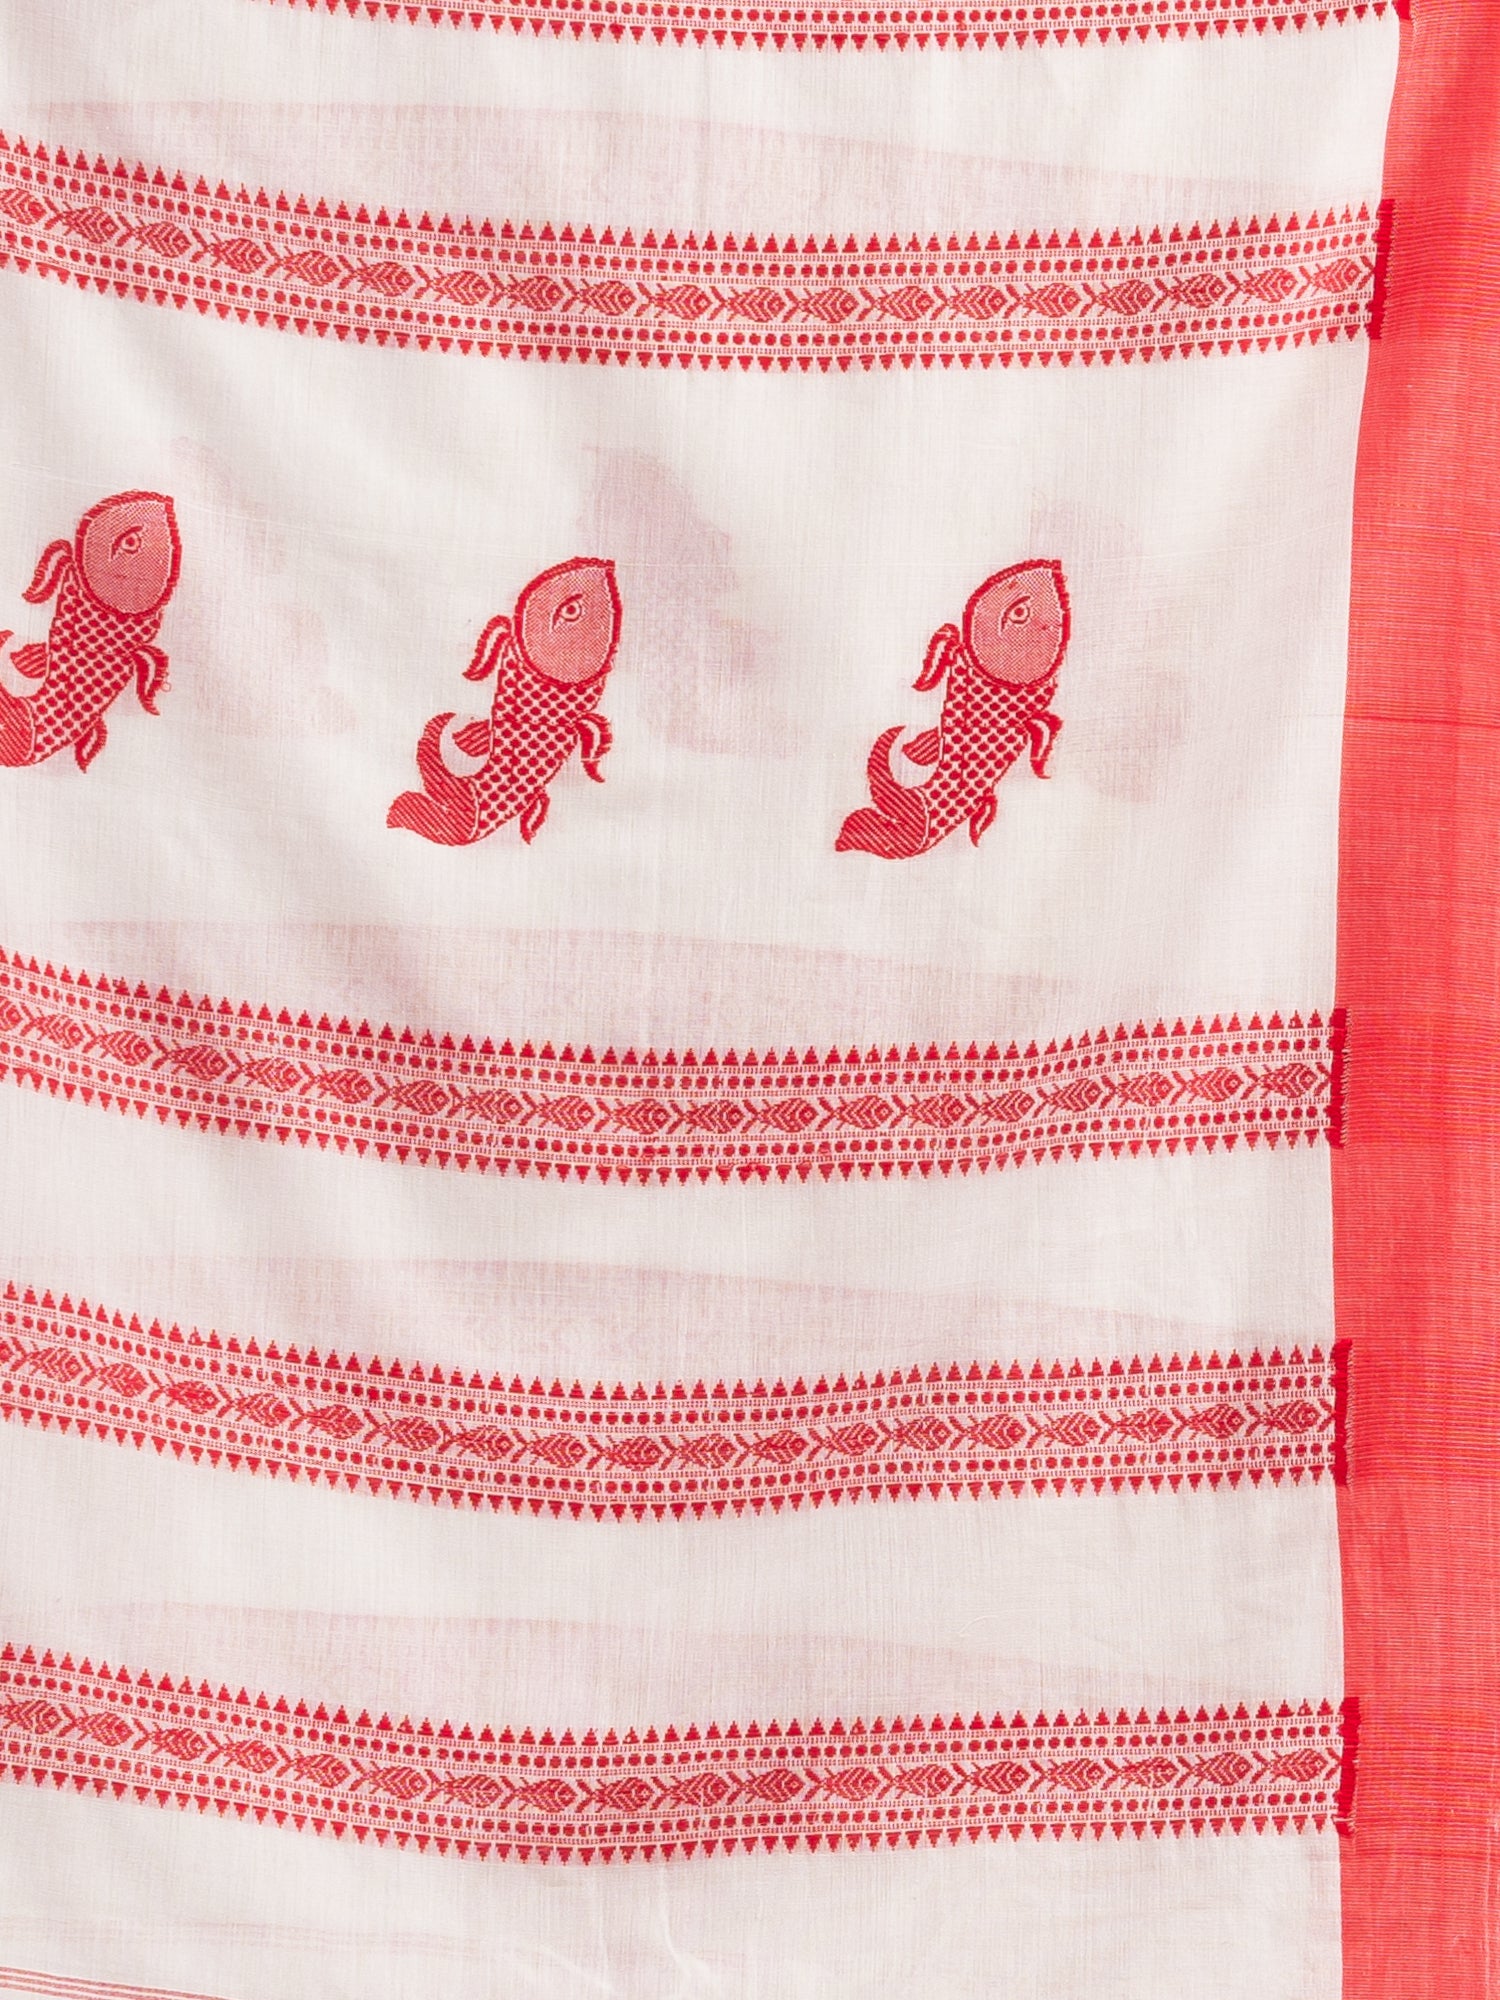 Women's white all body small fish design with fish design pallu in solid border handwoven cotton saree - Angoshobha